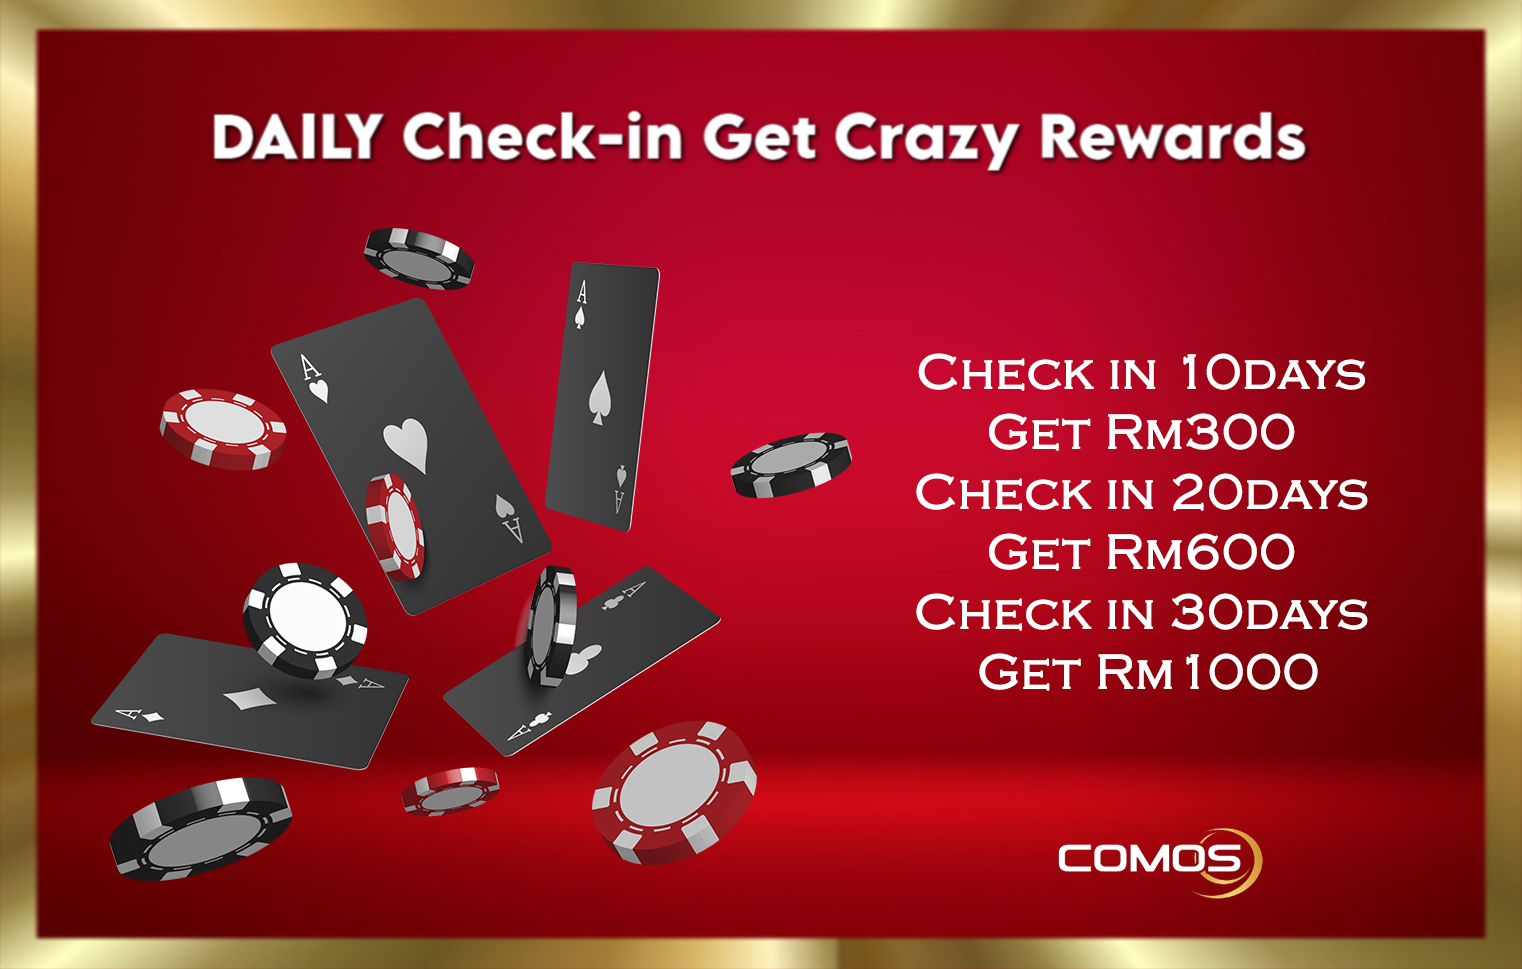 Comos9 Daily Check-in Get Crazy Rewards Up To RM1000 !!!!